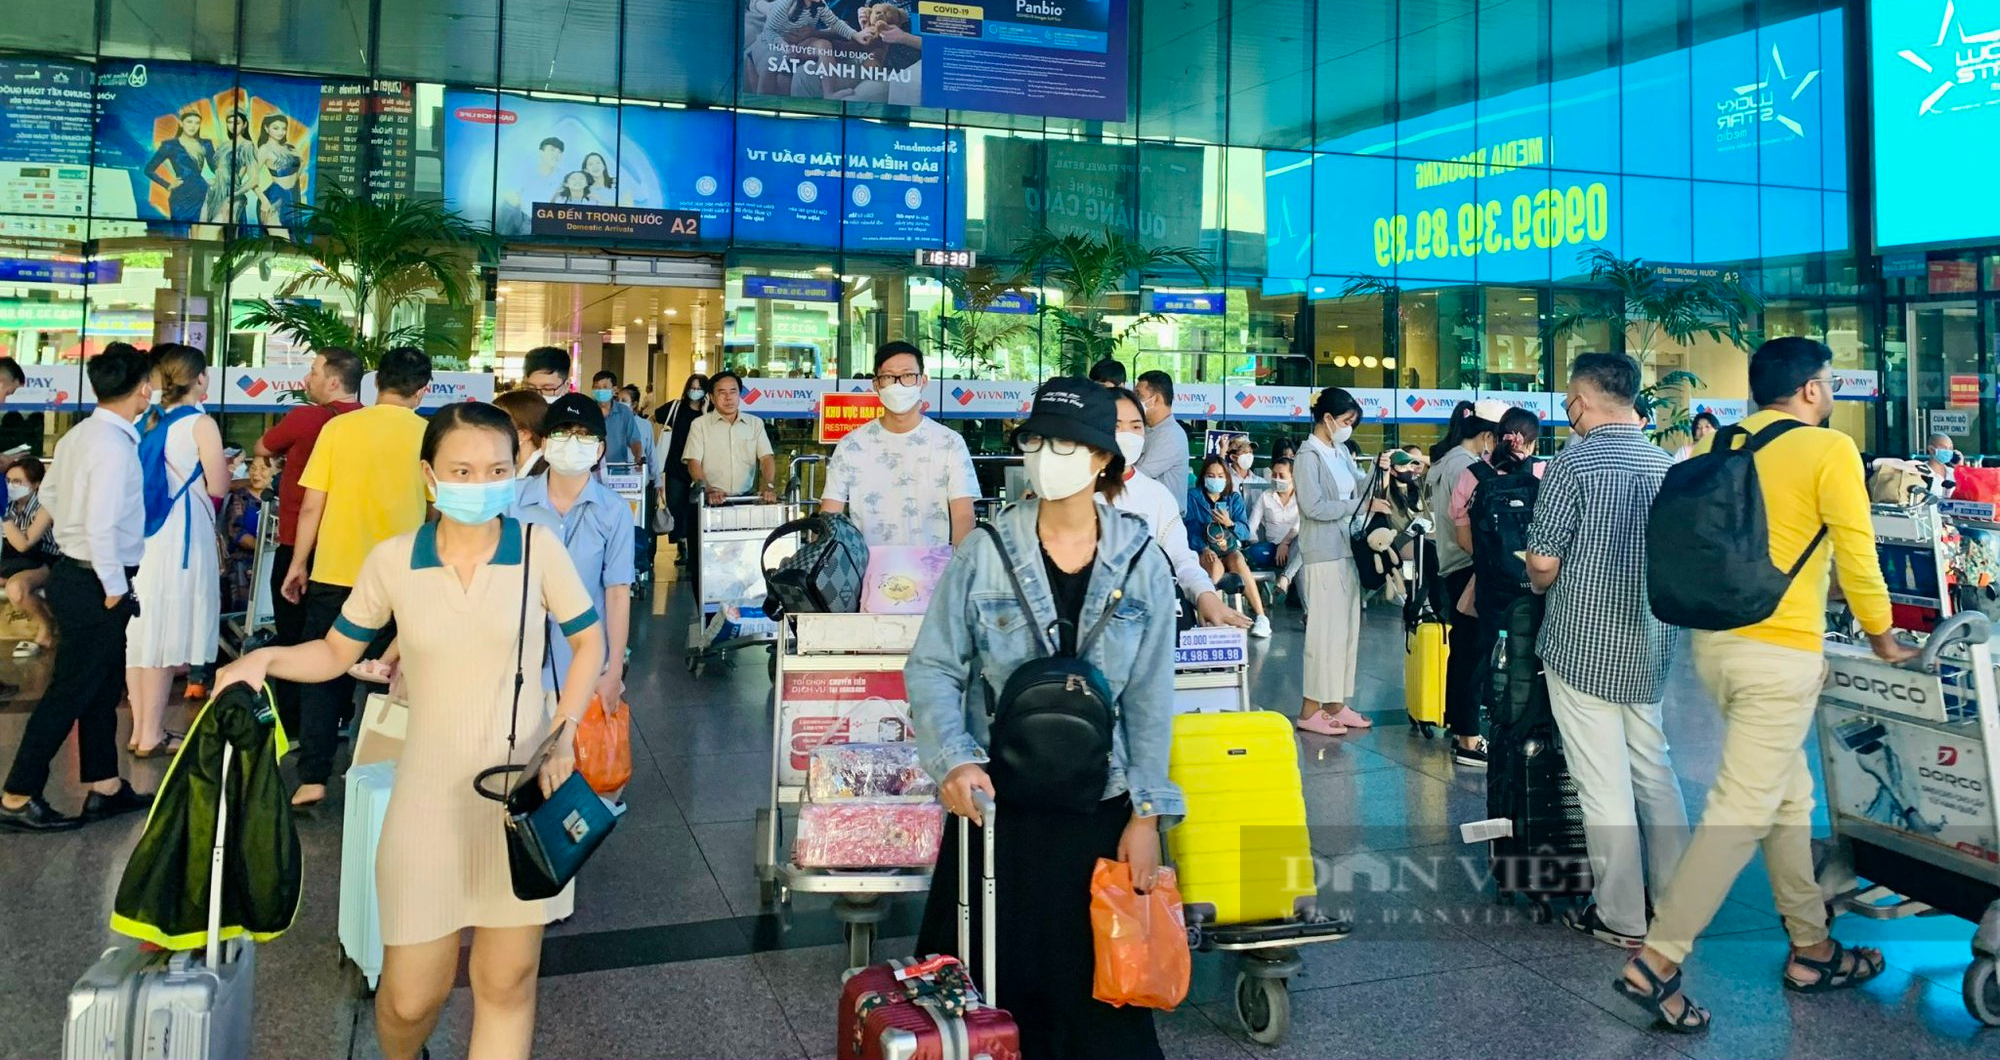 Ngày đầu sau kỳ nghỉ lễ, sân bay Tân Sơn Nhất vẫn chật ních người - Ảnh 1.